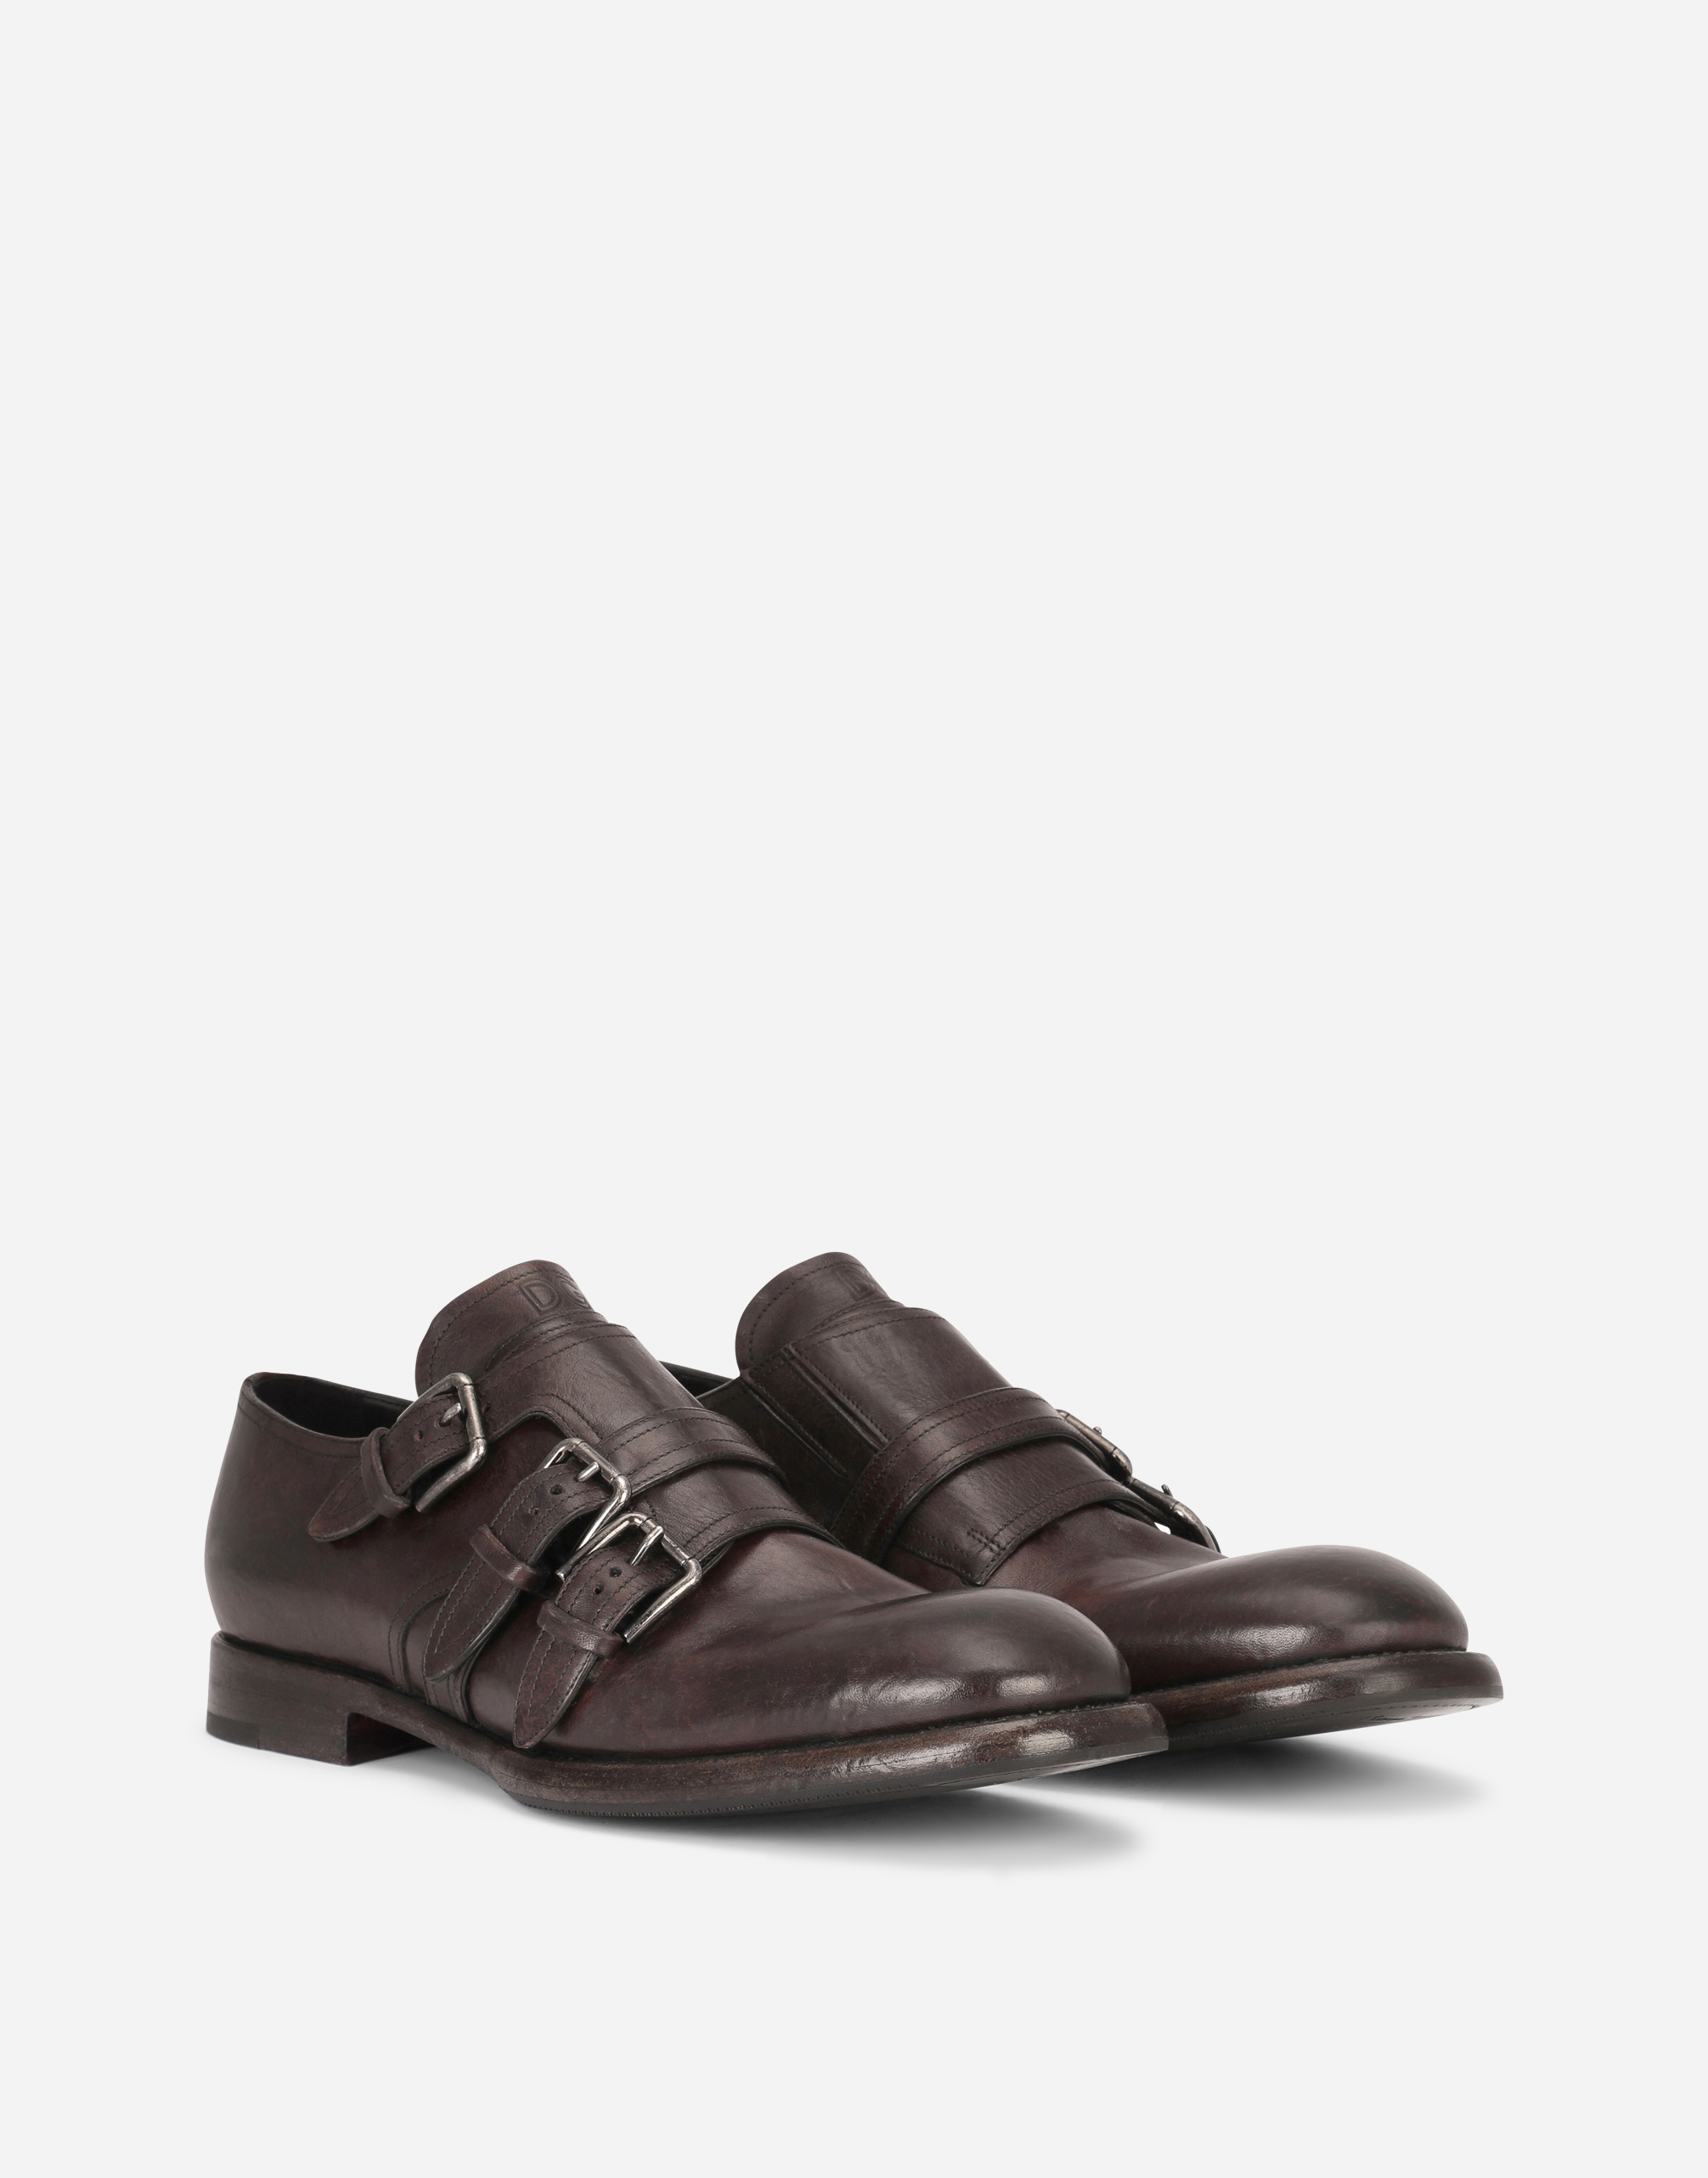 Hombre Zapatos de Zapatos sin cordones de Zapatos con hebilla Zapatos Monk en piel de becerro horse Dolce & Gabbana de Cuero de color Marrón para hombre 